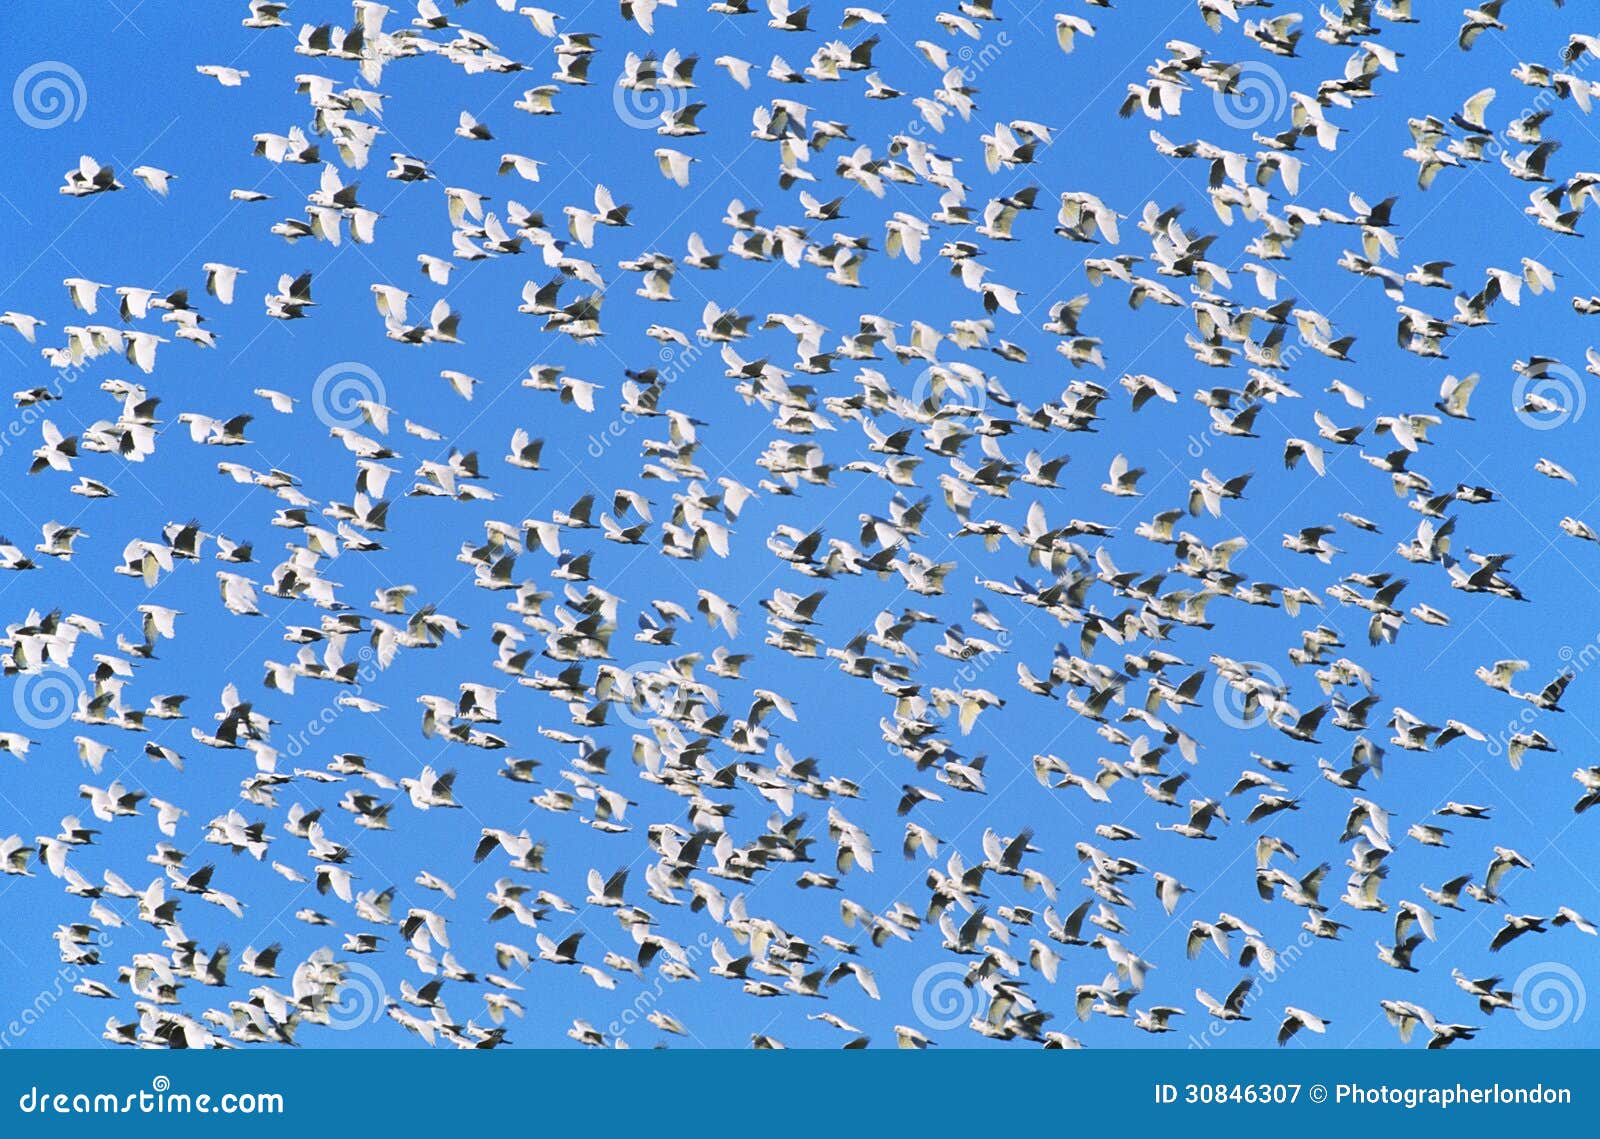 flock of migrating birds